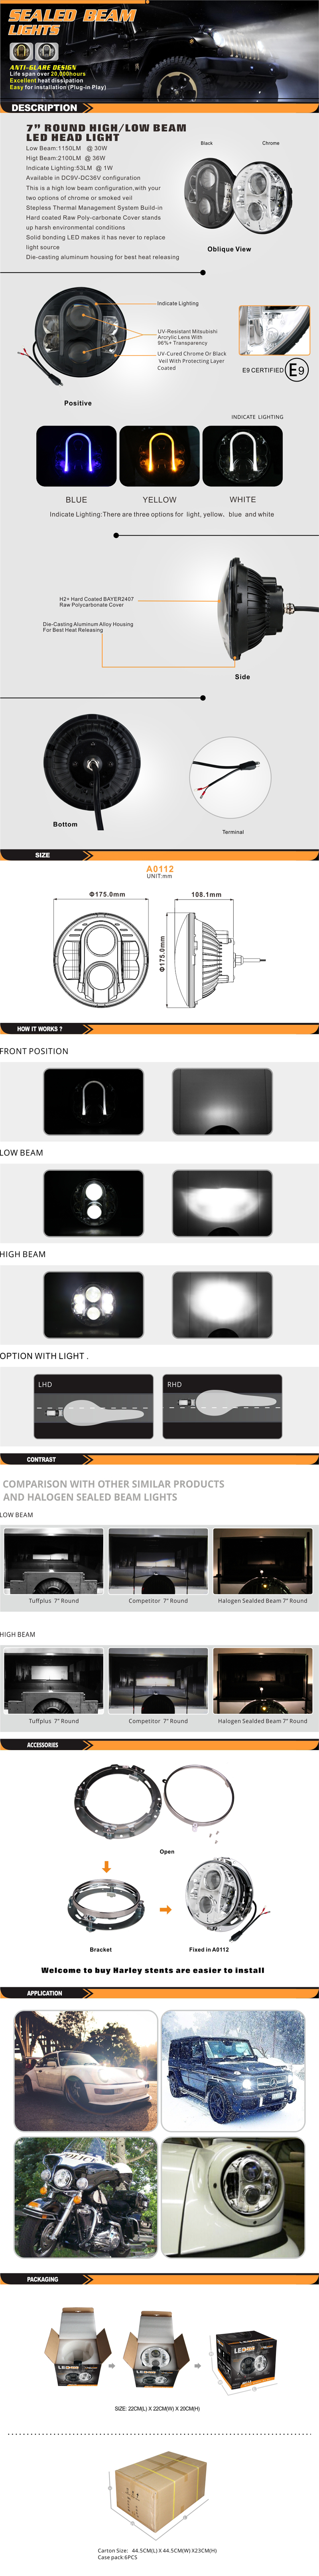 A0112-标准灯产品描述页